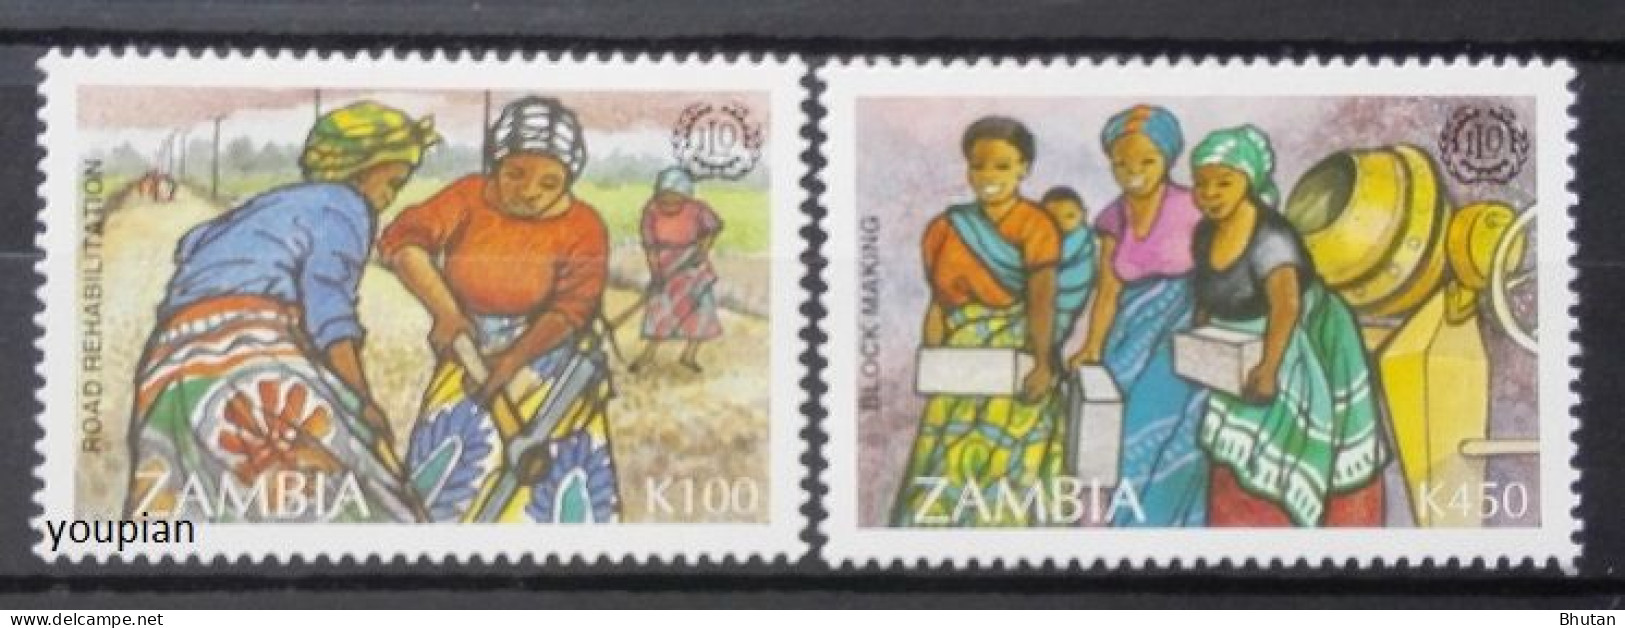 Zambia 1995, 75th Anniversary Of Internatioal Labour Organization (ILO), MNH Stamps Set - Zambie (1965-...)